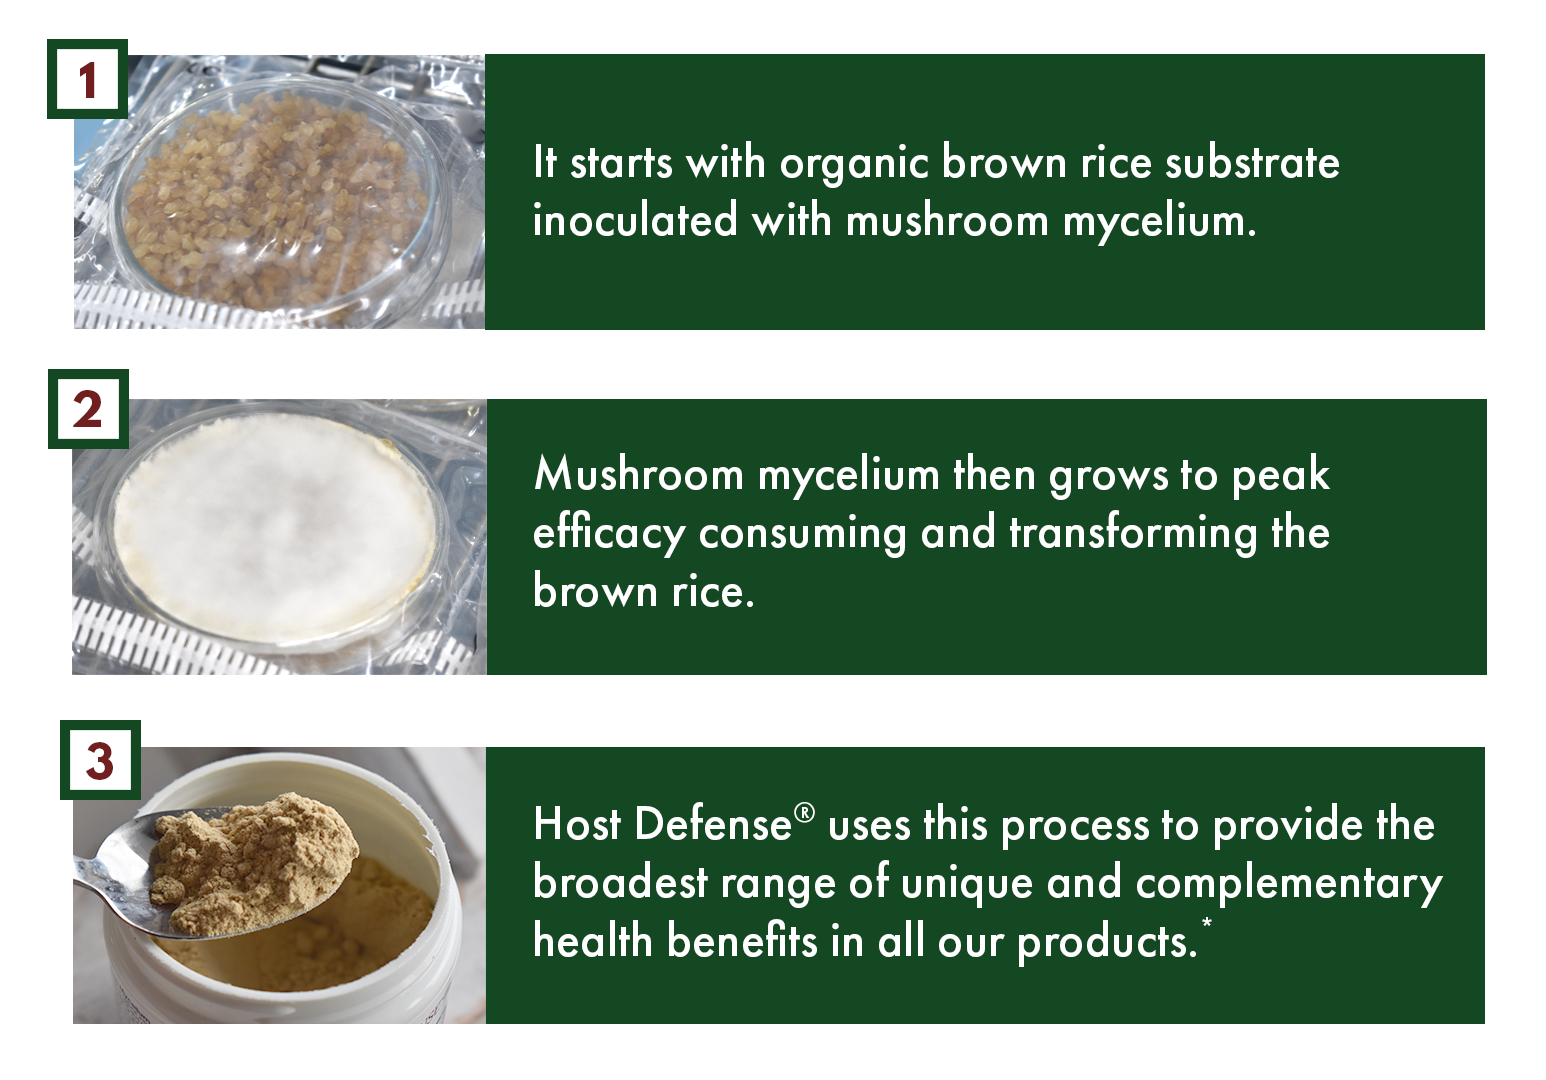 Growing Mushroom Mycelium on Brown Rice Substrate